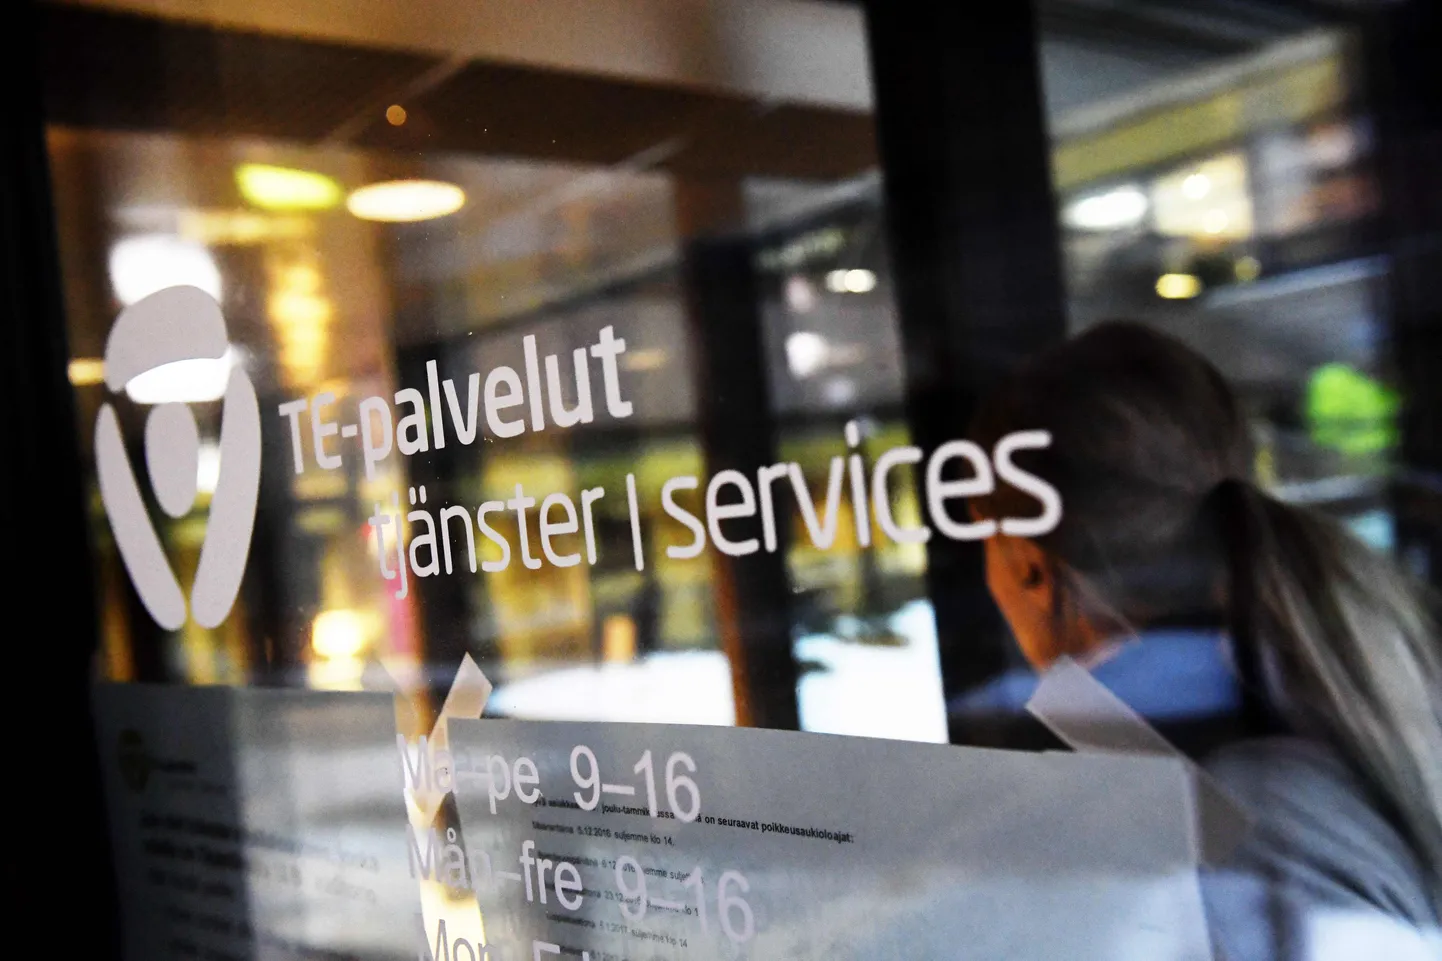 Офис финского ведомства по трудозанятости в Хельсинки.